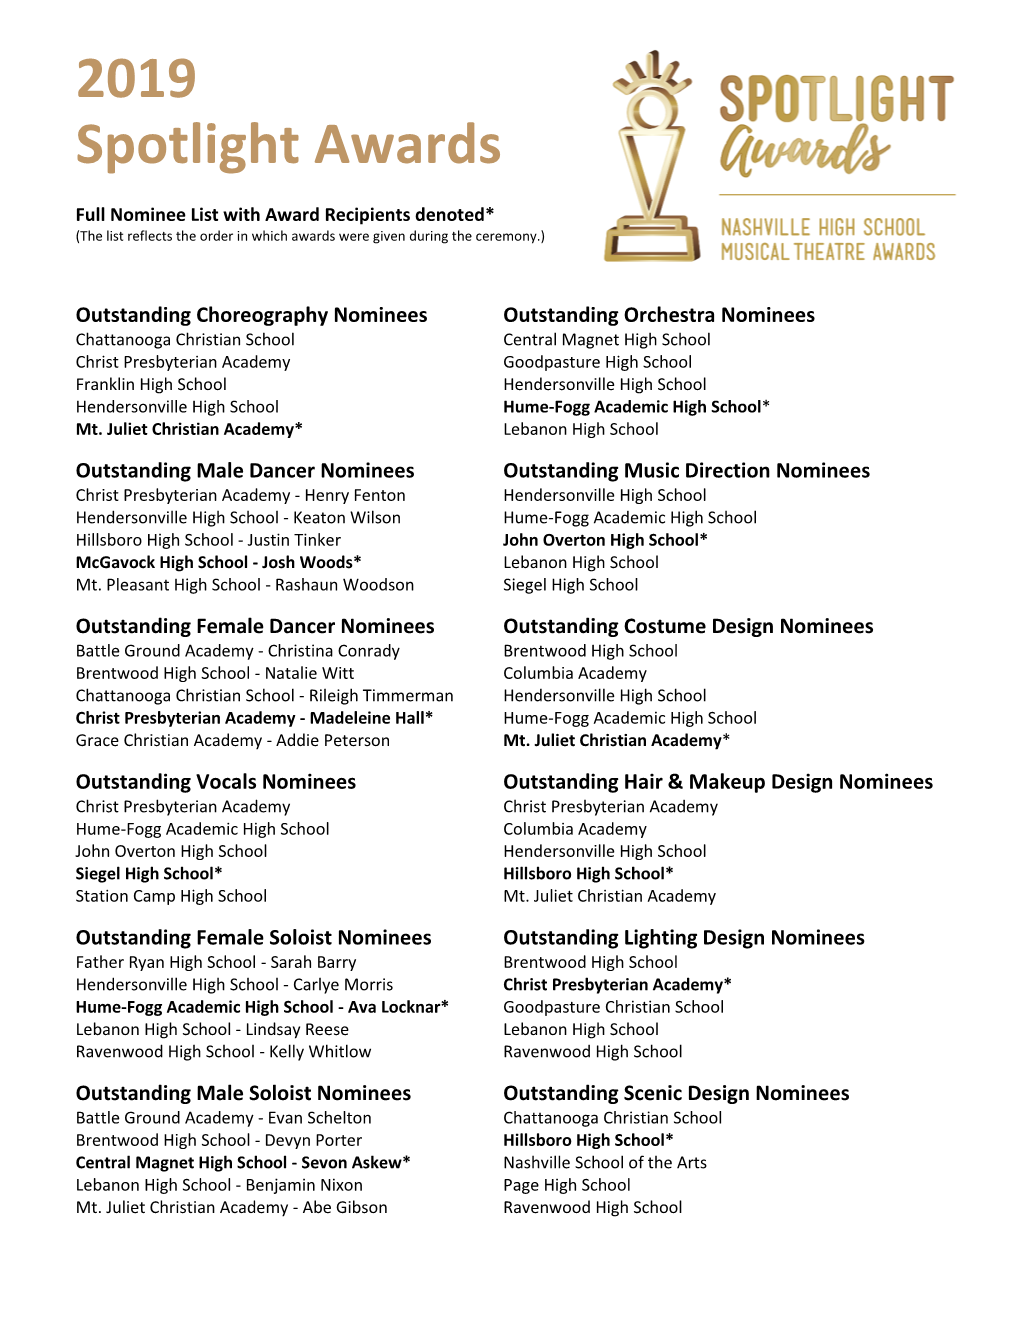 2019 Spotlight Awards